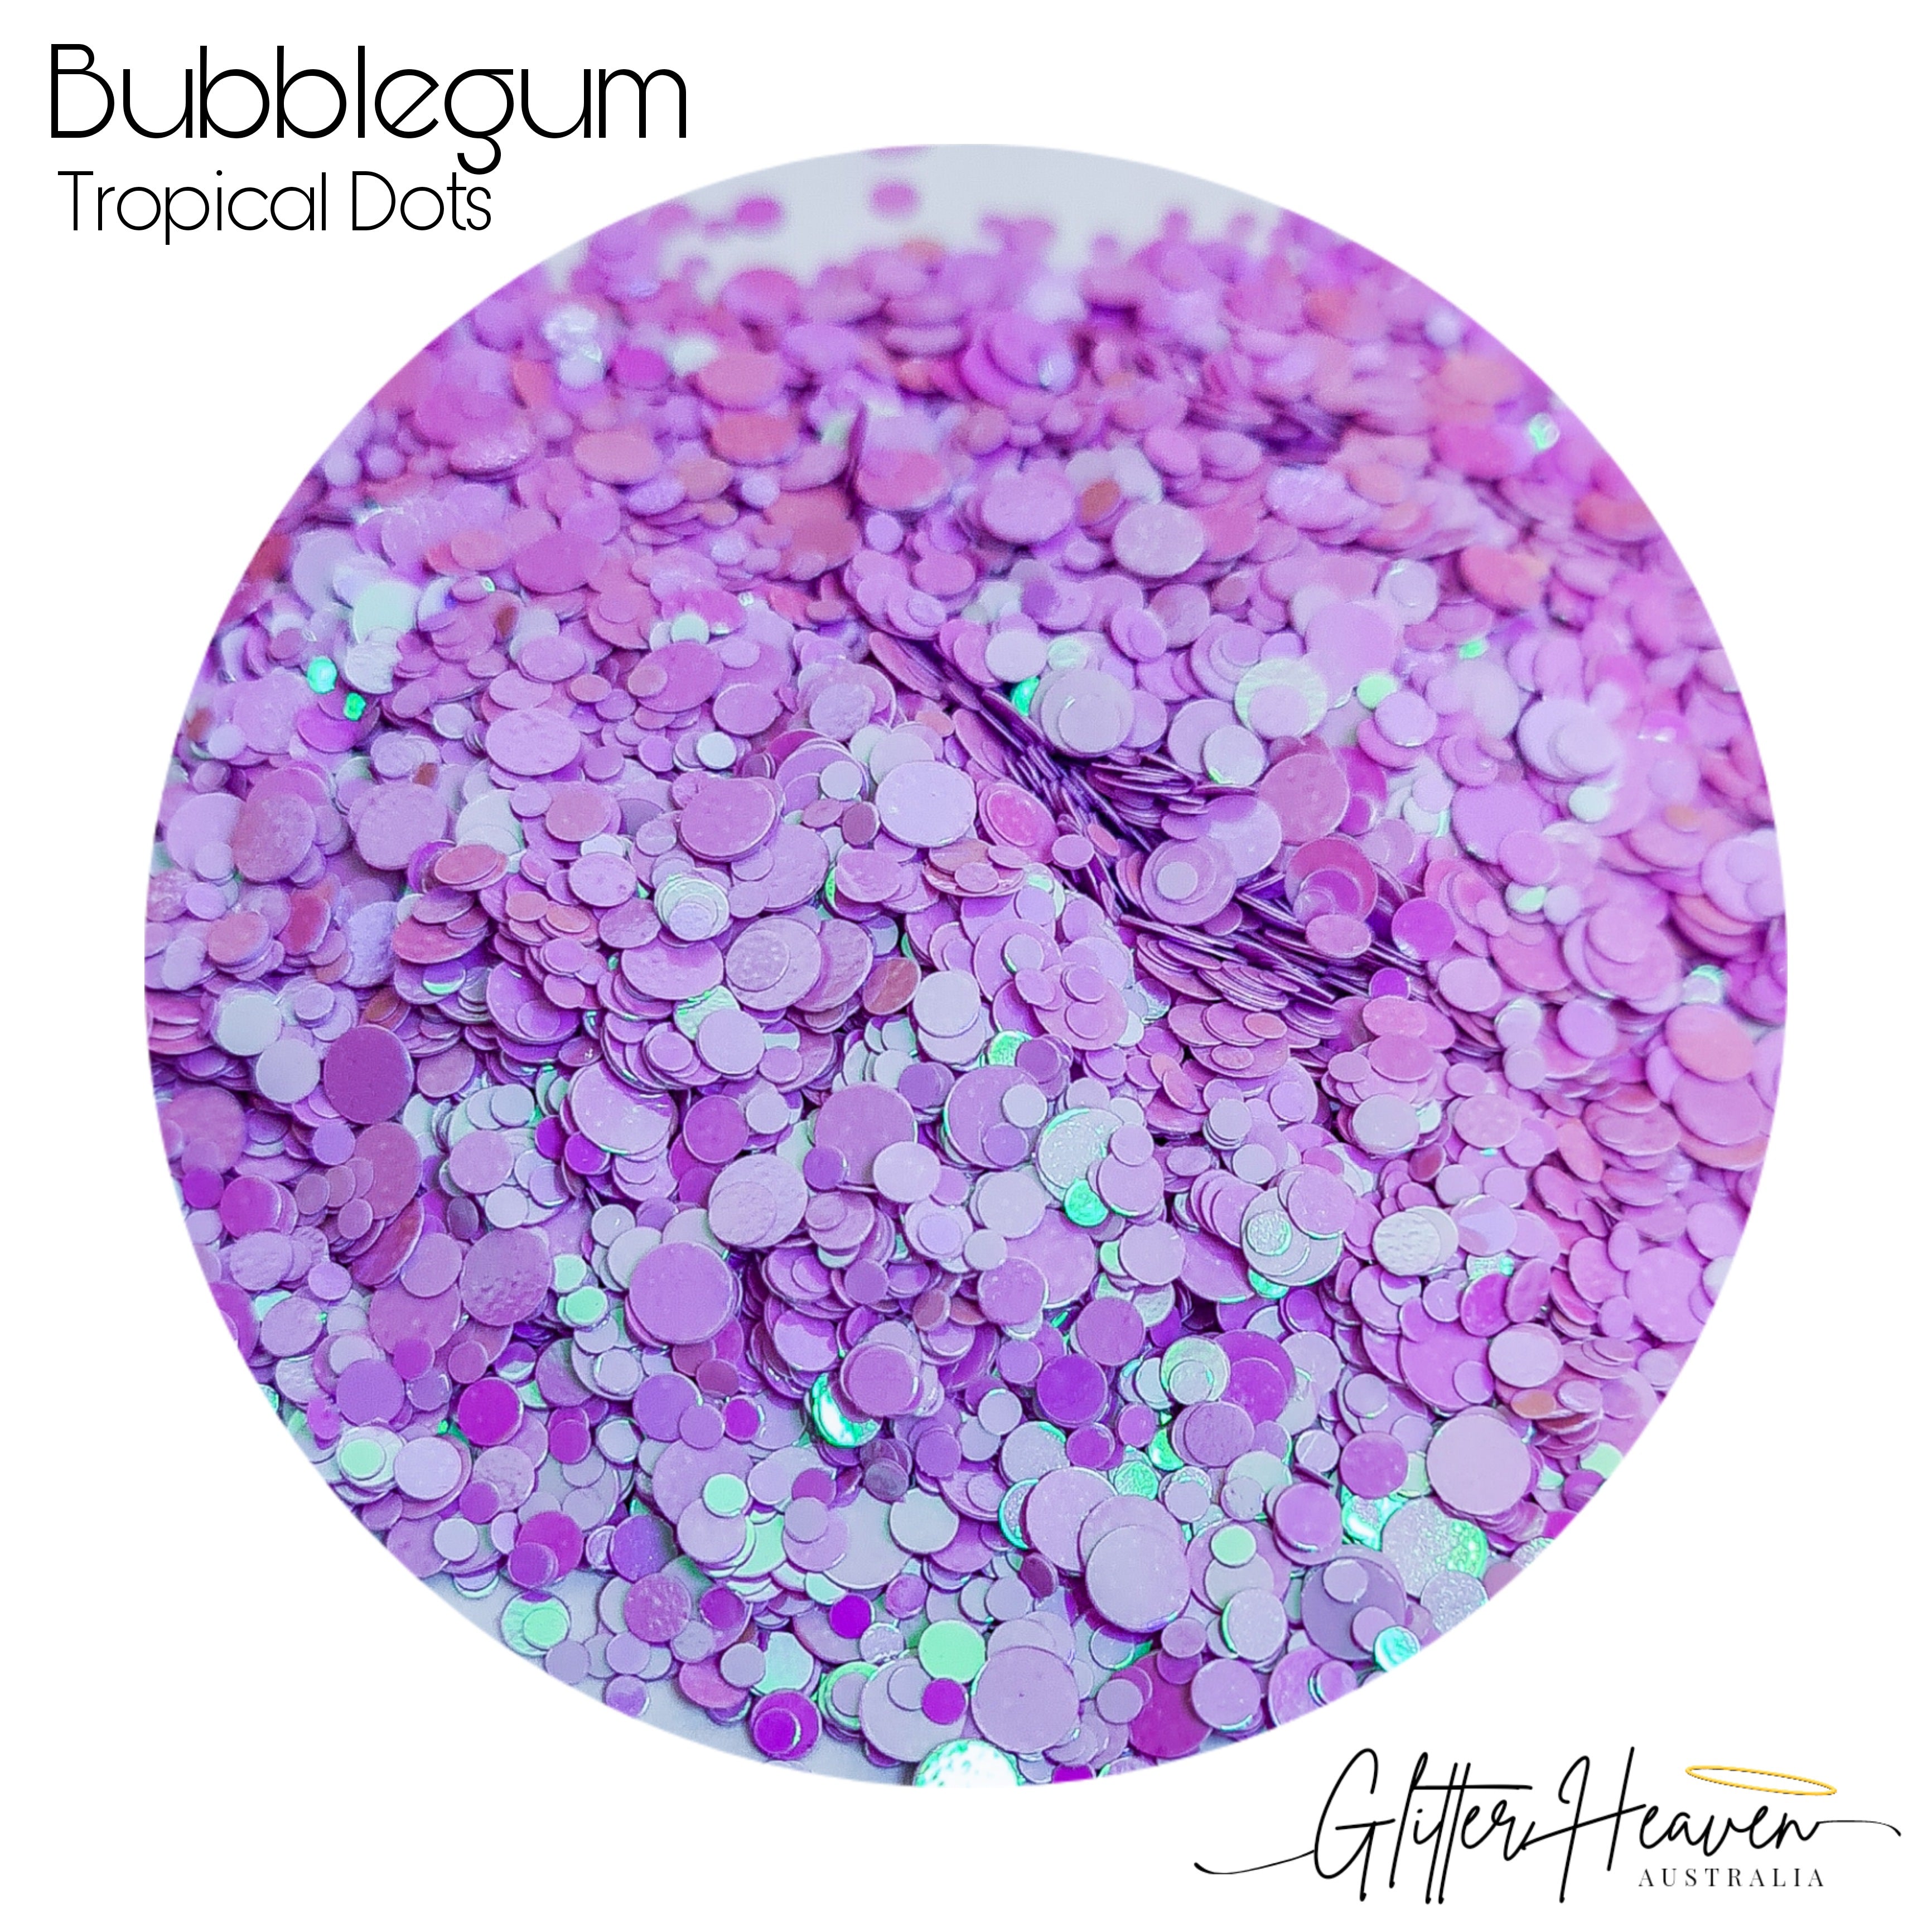 Bubblegum Tropical Dots